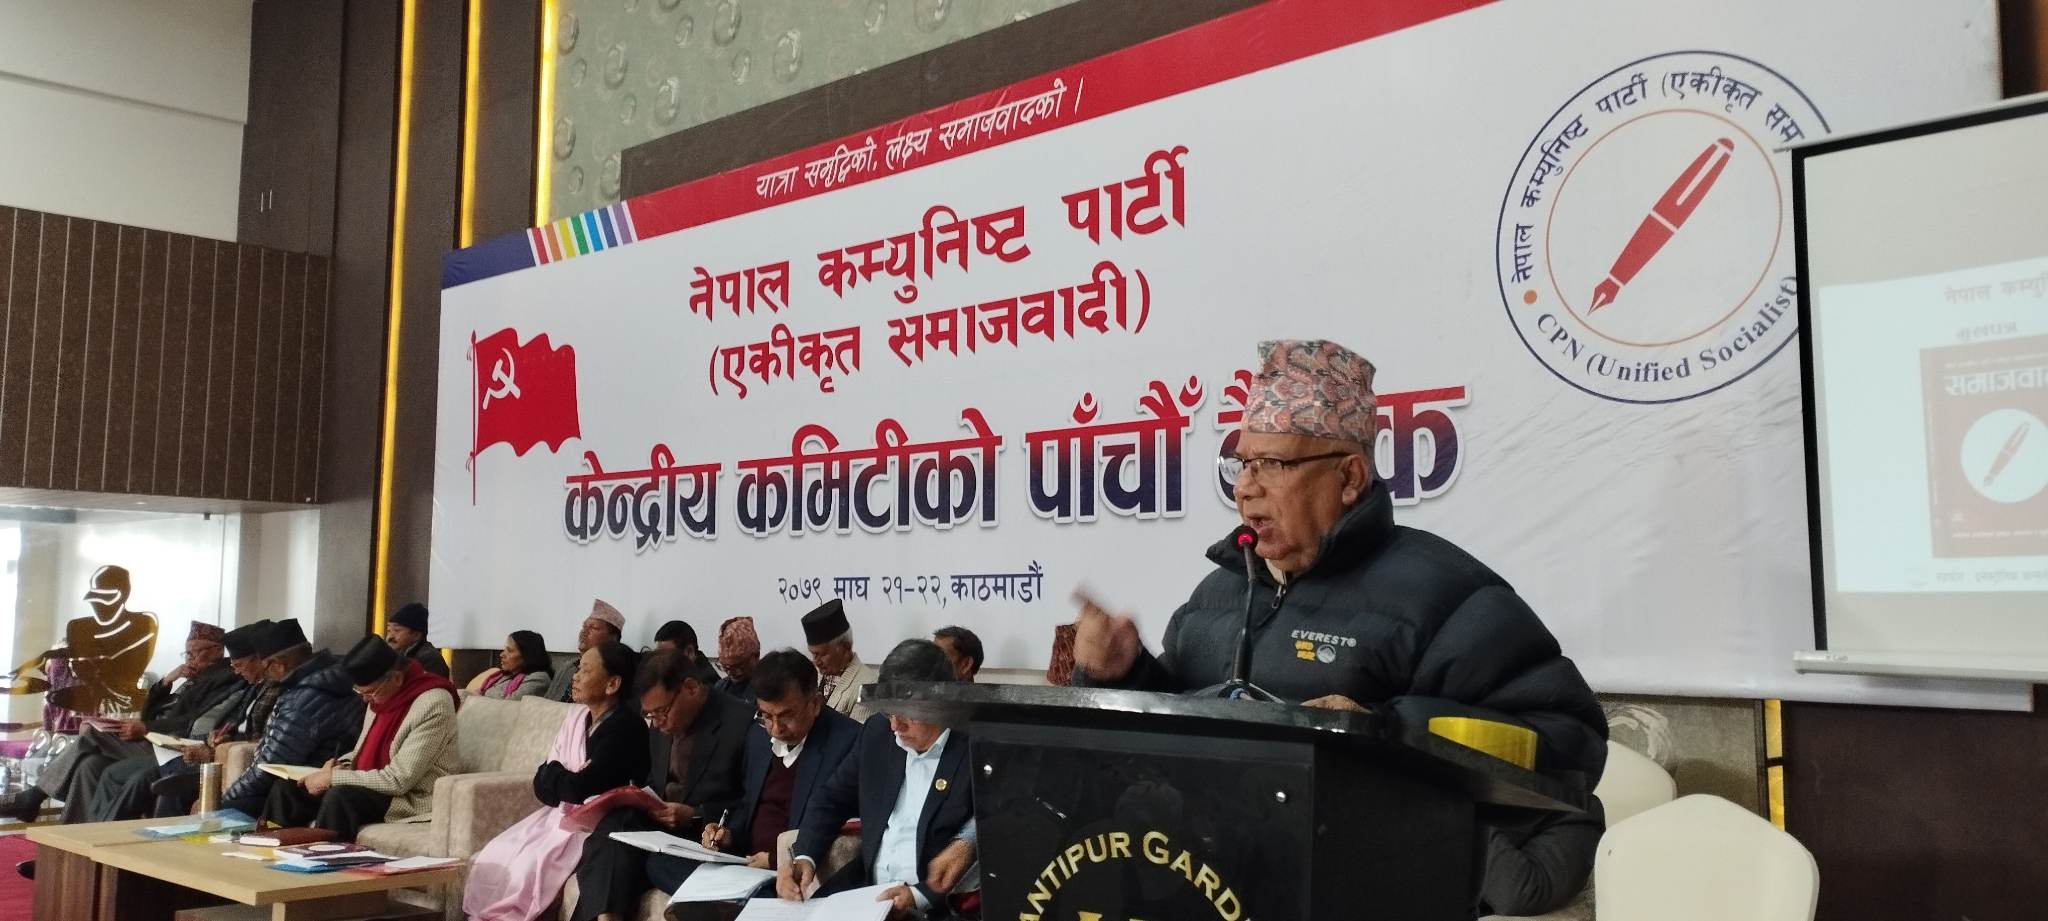 प्रचण्डले कहिलेसम्म थेग्ने हो, गठबन्धनभित्र खटपट सुरू भइसक्यो : माधव नेपाल